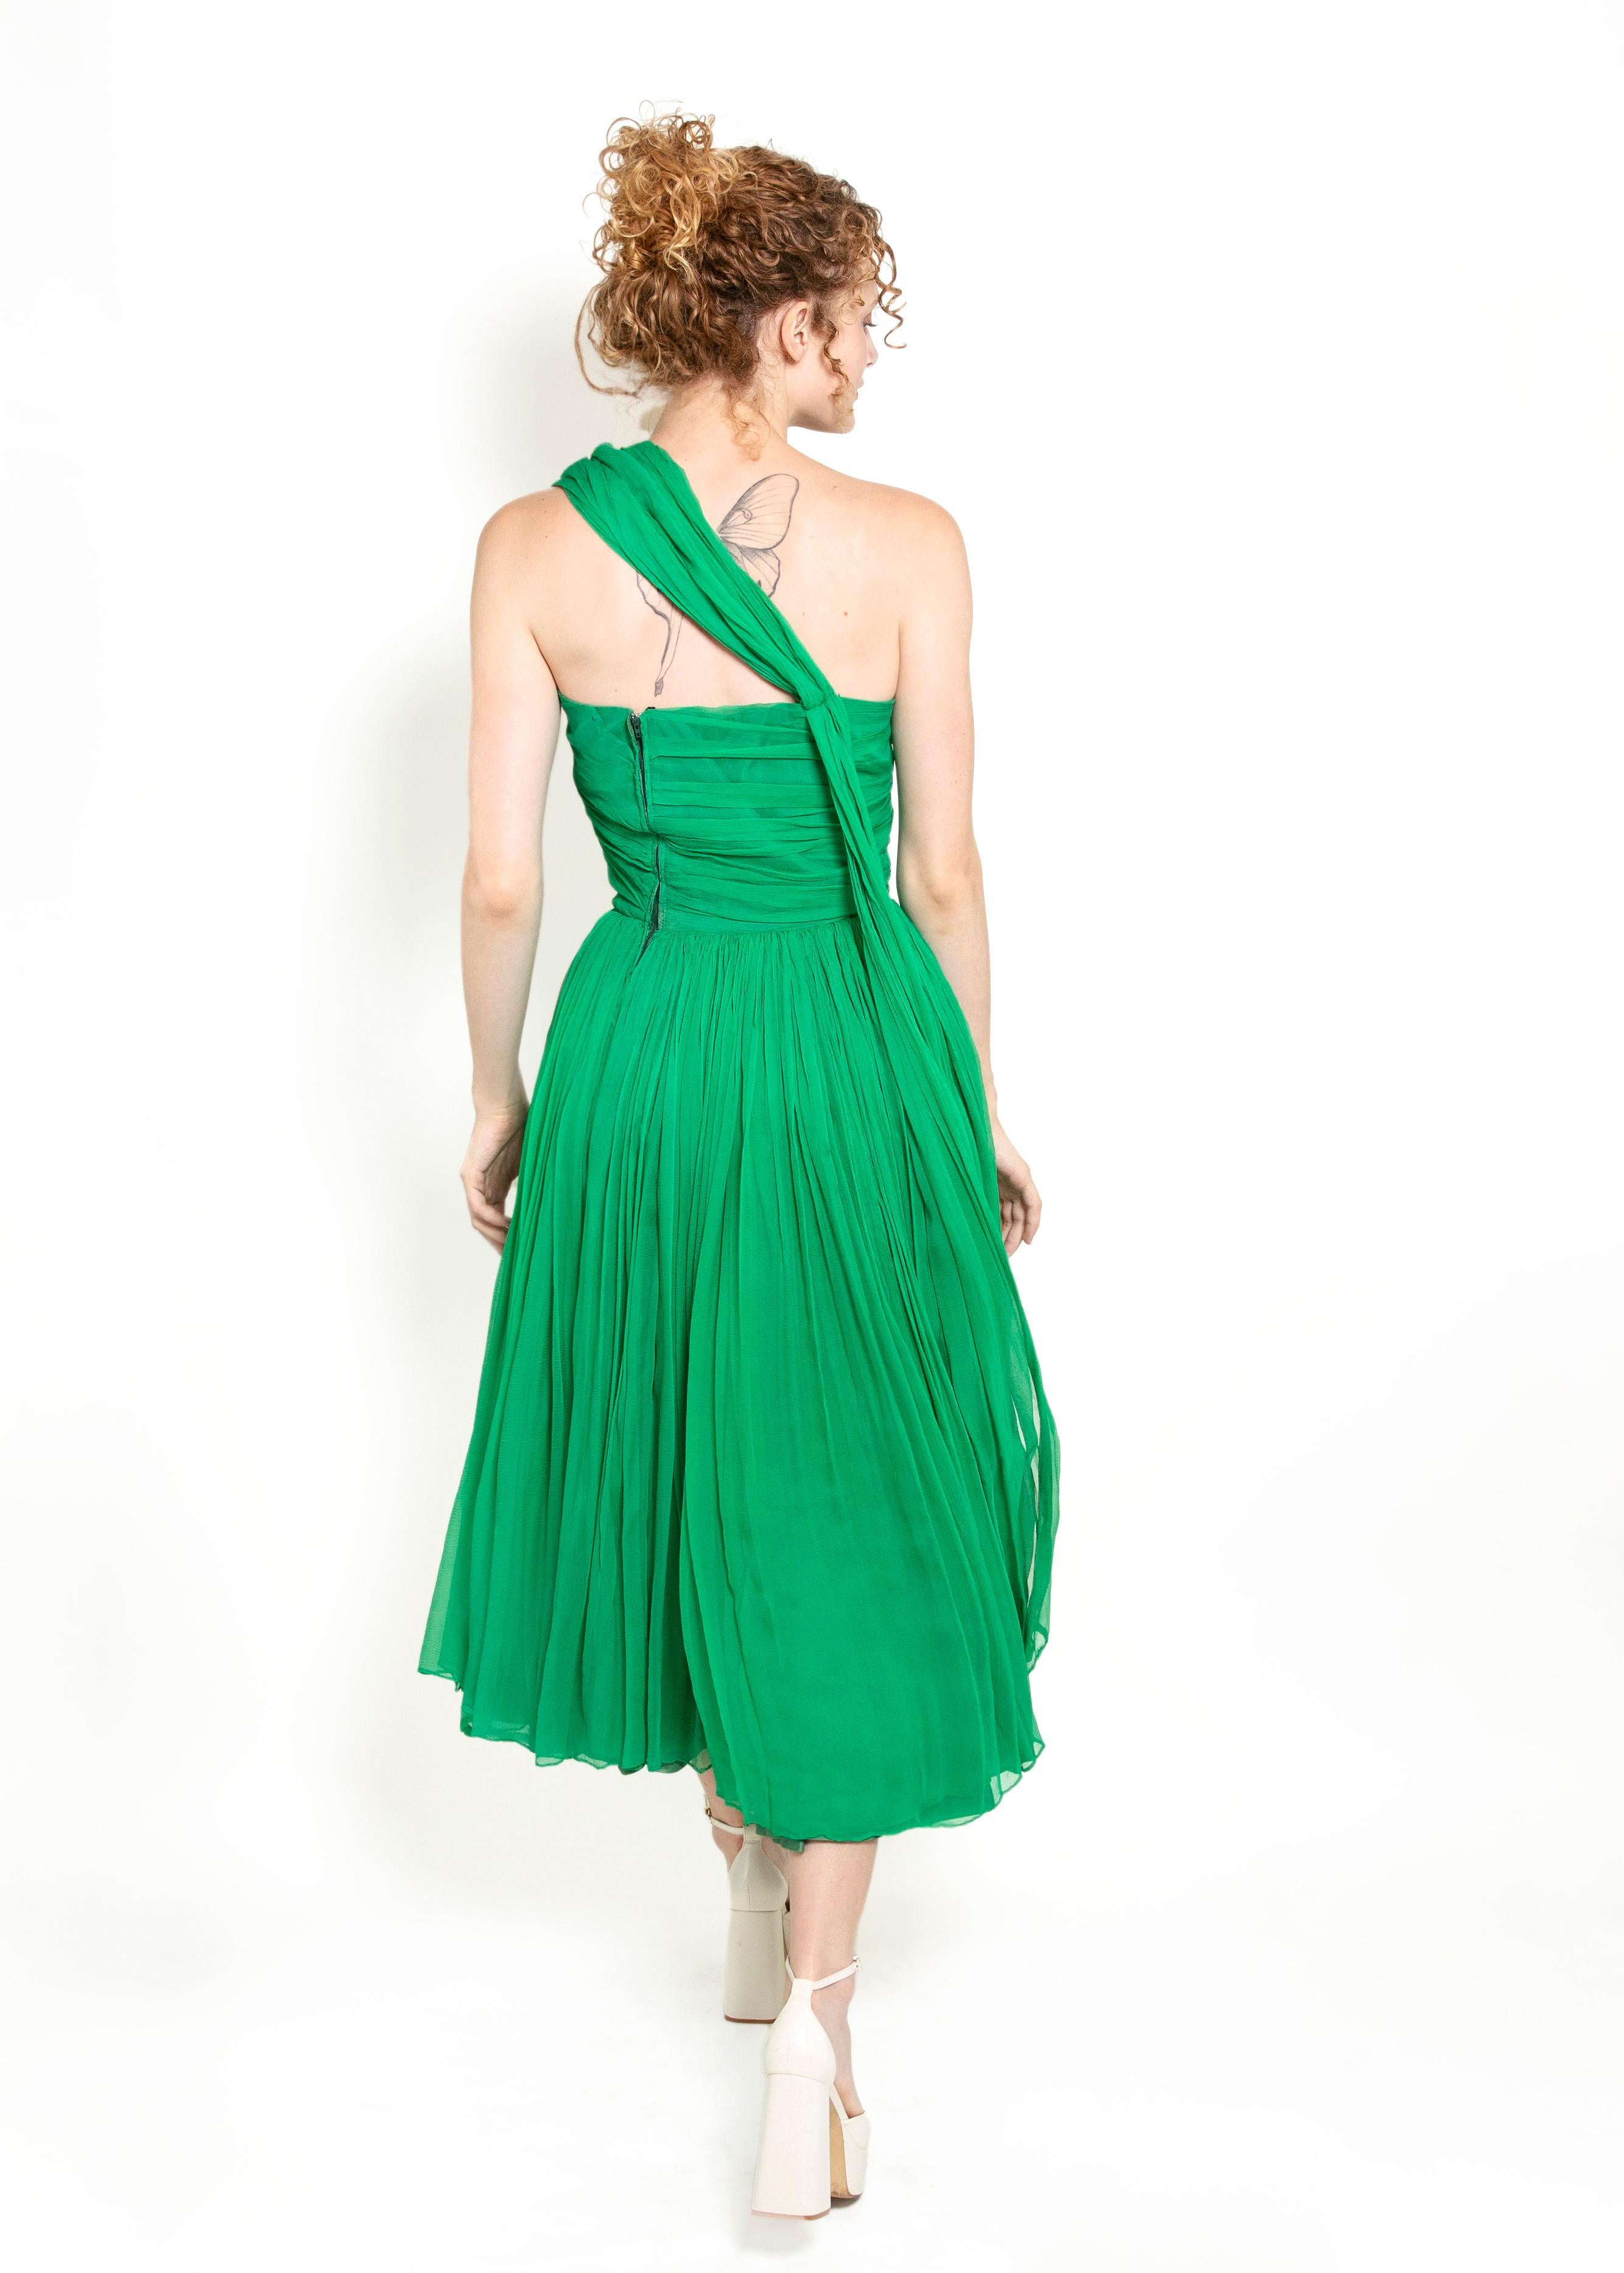 Cette superbe robe de cocktail en mousseline de soie vert Kelly des années 1950 est parfaite pour faire tourner les têtes lors d'une occasion spéciale. Luxueux et intemporel, son tissu en mousseline de soie crée un effet drapé, tandis que le faux